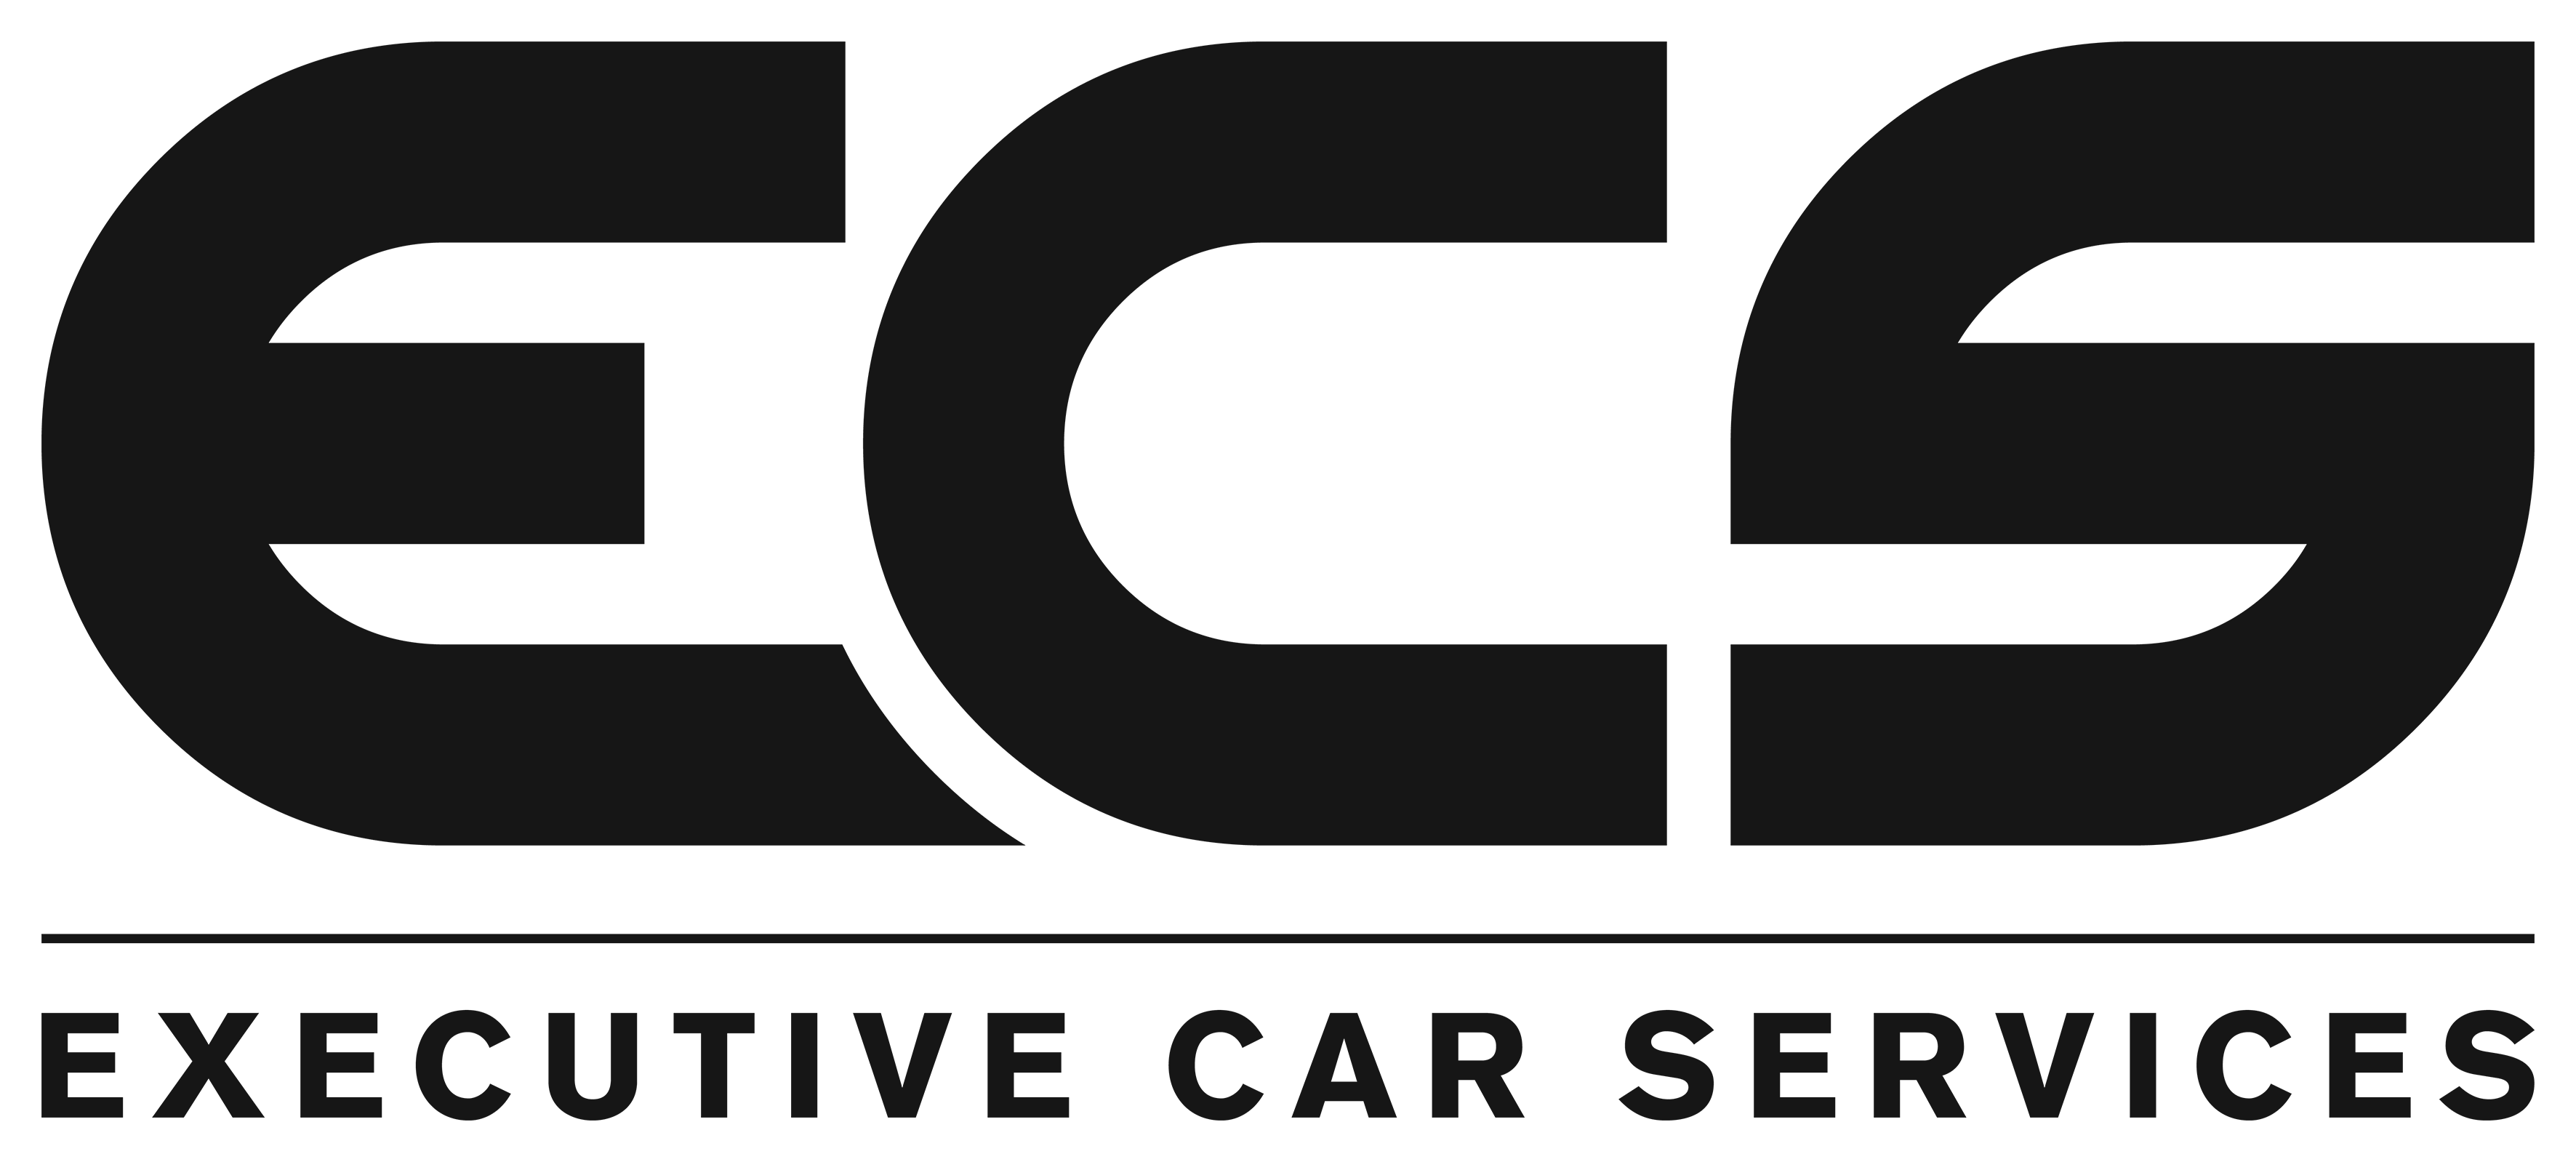 Executive Service Logo - ECS LOGO MASTER BLACK – EXECUTIVE CAR SERVICES LTD